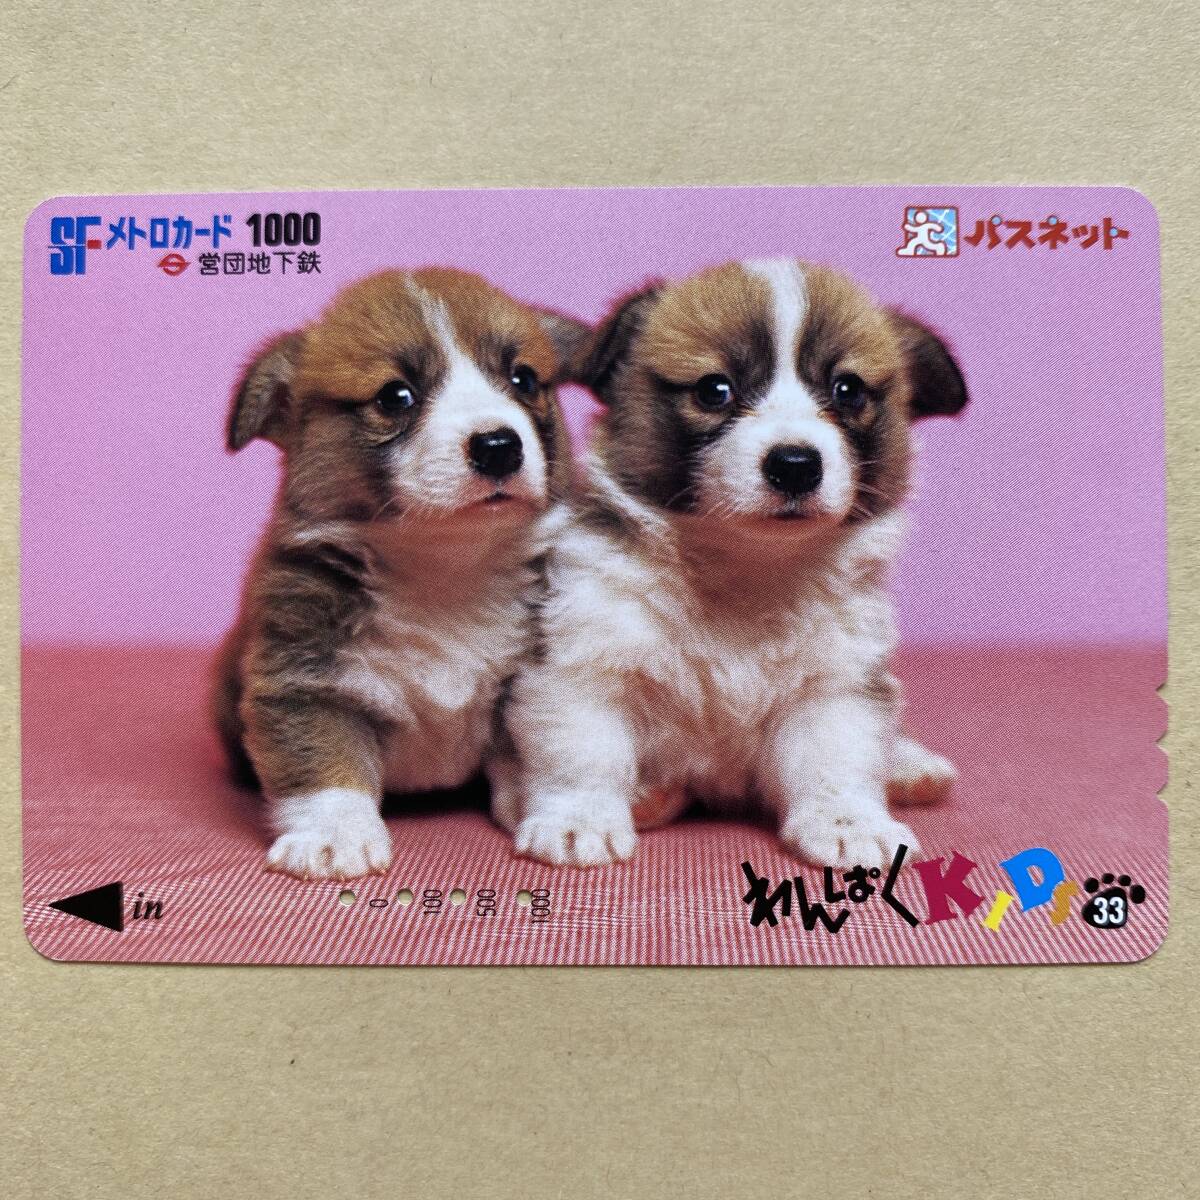 【使用済】 パスネット 営団地下鉄 東京メトロ わんぱくKIDS33 犬_画像1